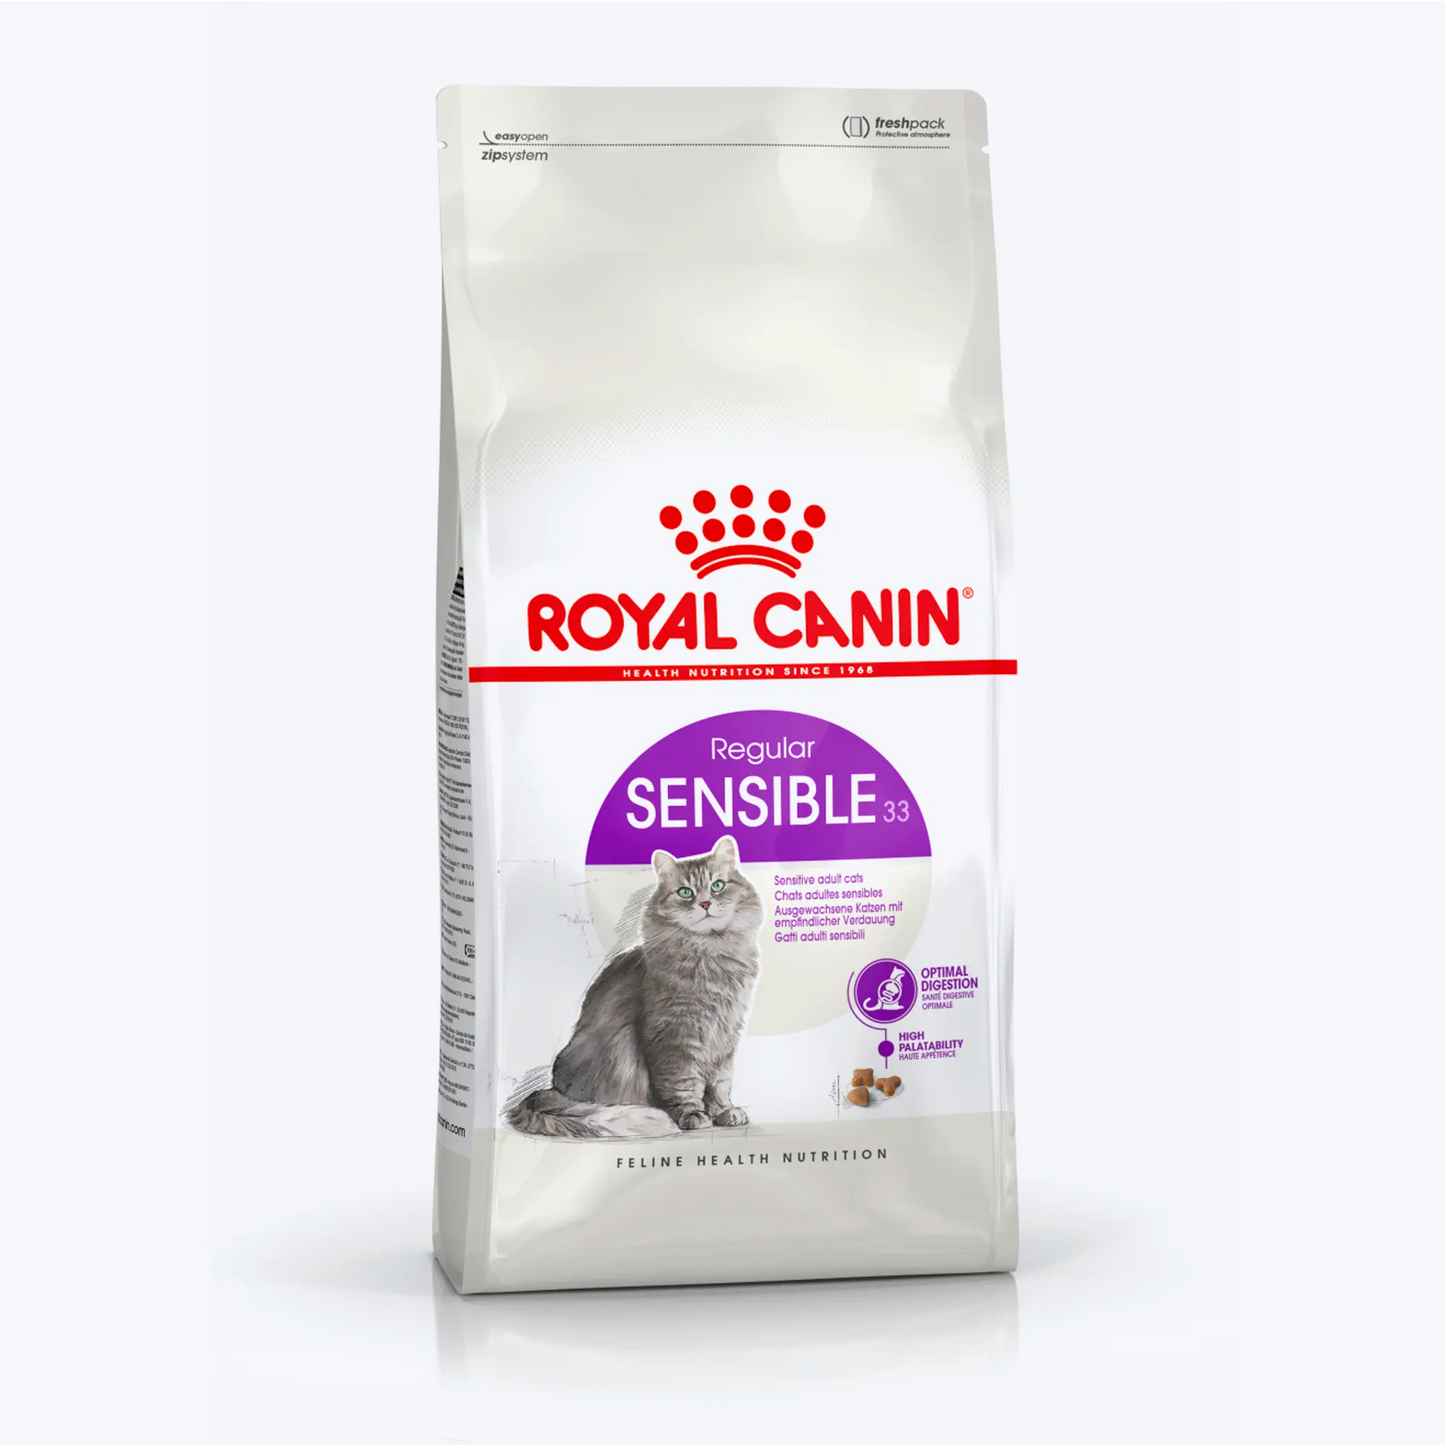 Royal Canin Sensible 33 Hassas Sindirim Sistemli Yetişkin Kedi Maması 4 Kg